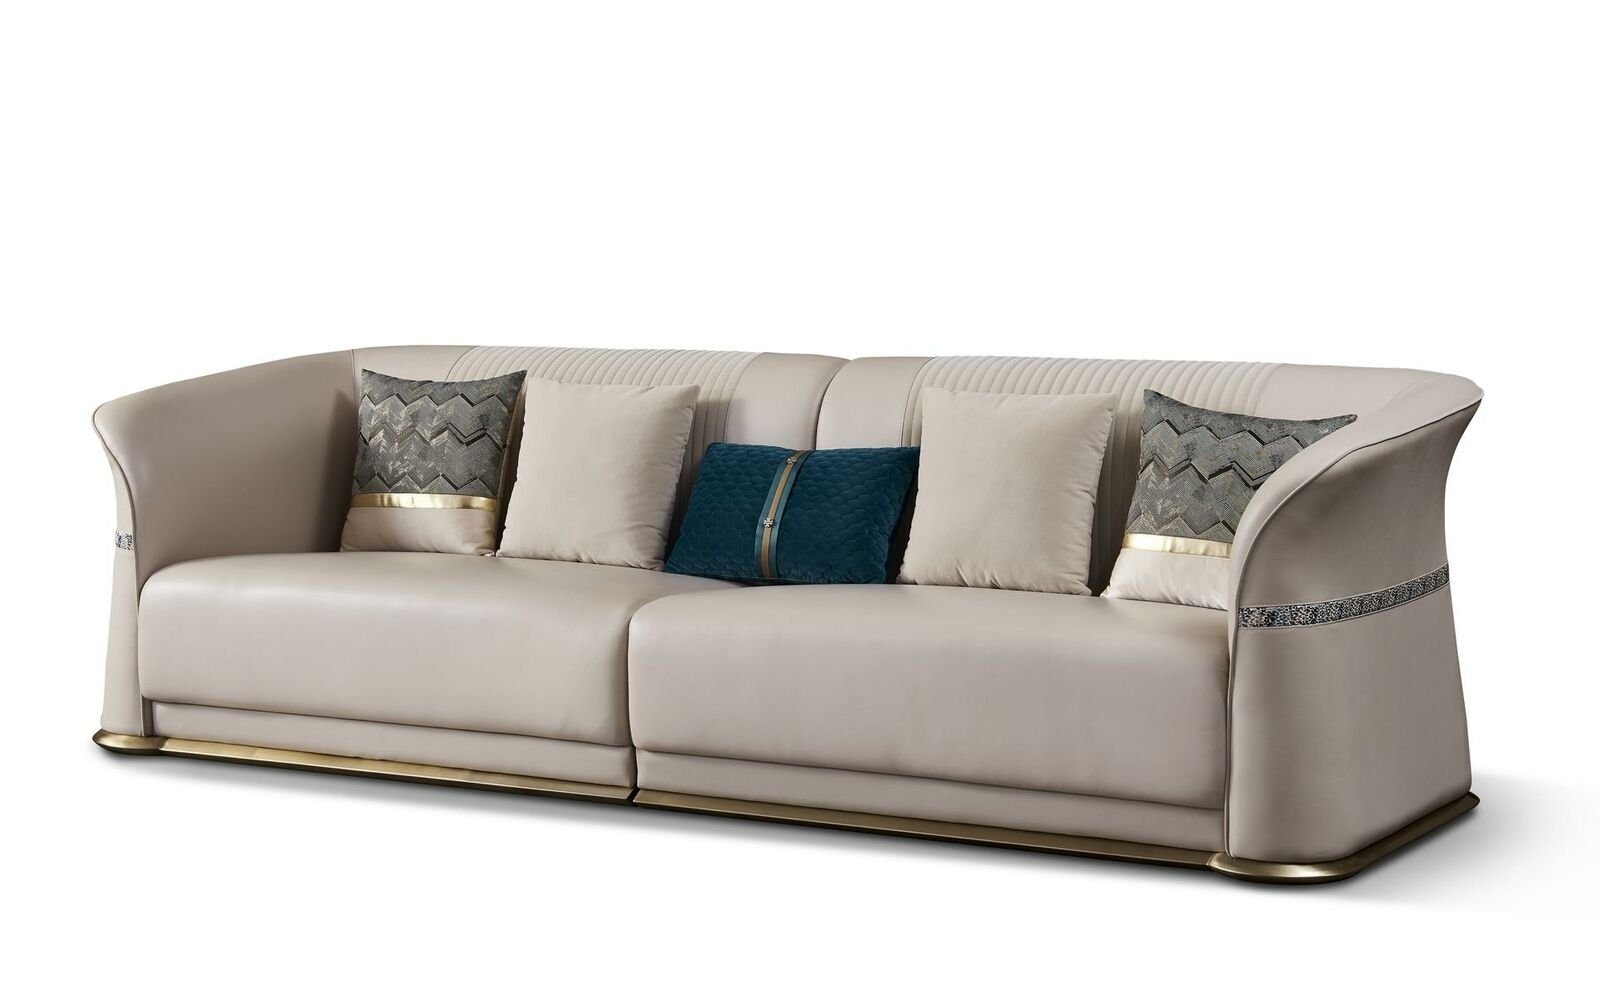 JVmoebel Sofa, Luxus Dreisitzer Couch Sitz Polster 3 Sitz Polster Couch | Alle Sofas